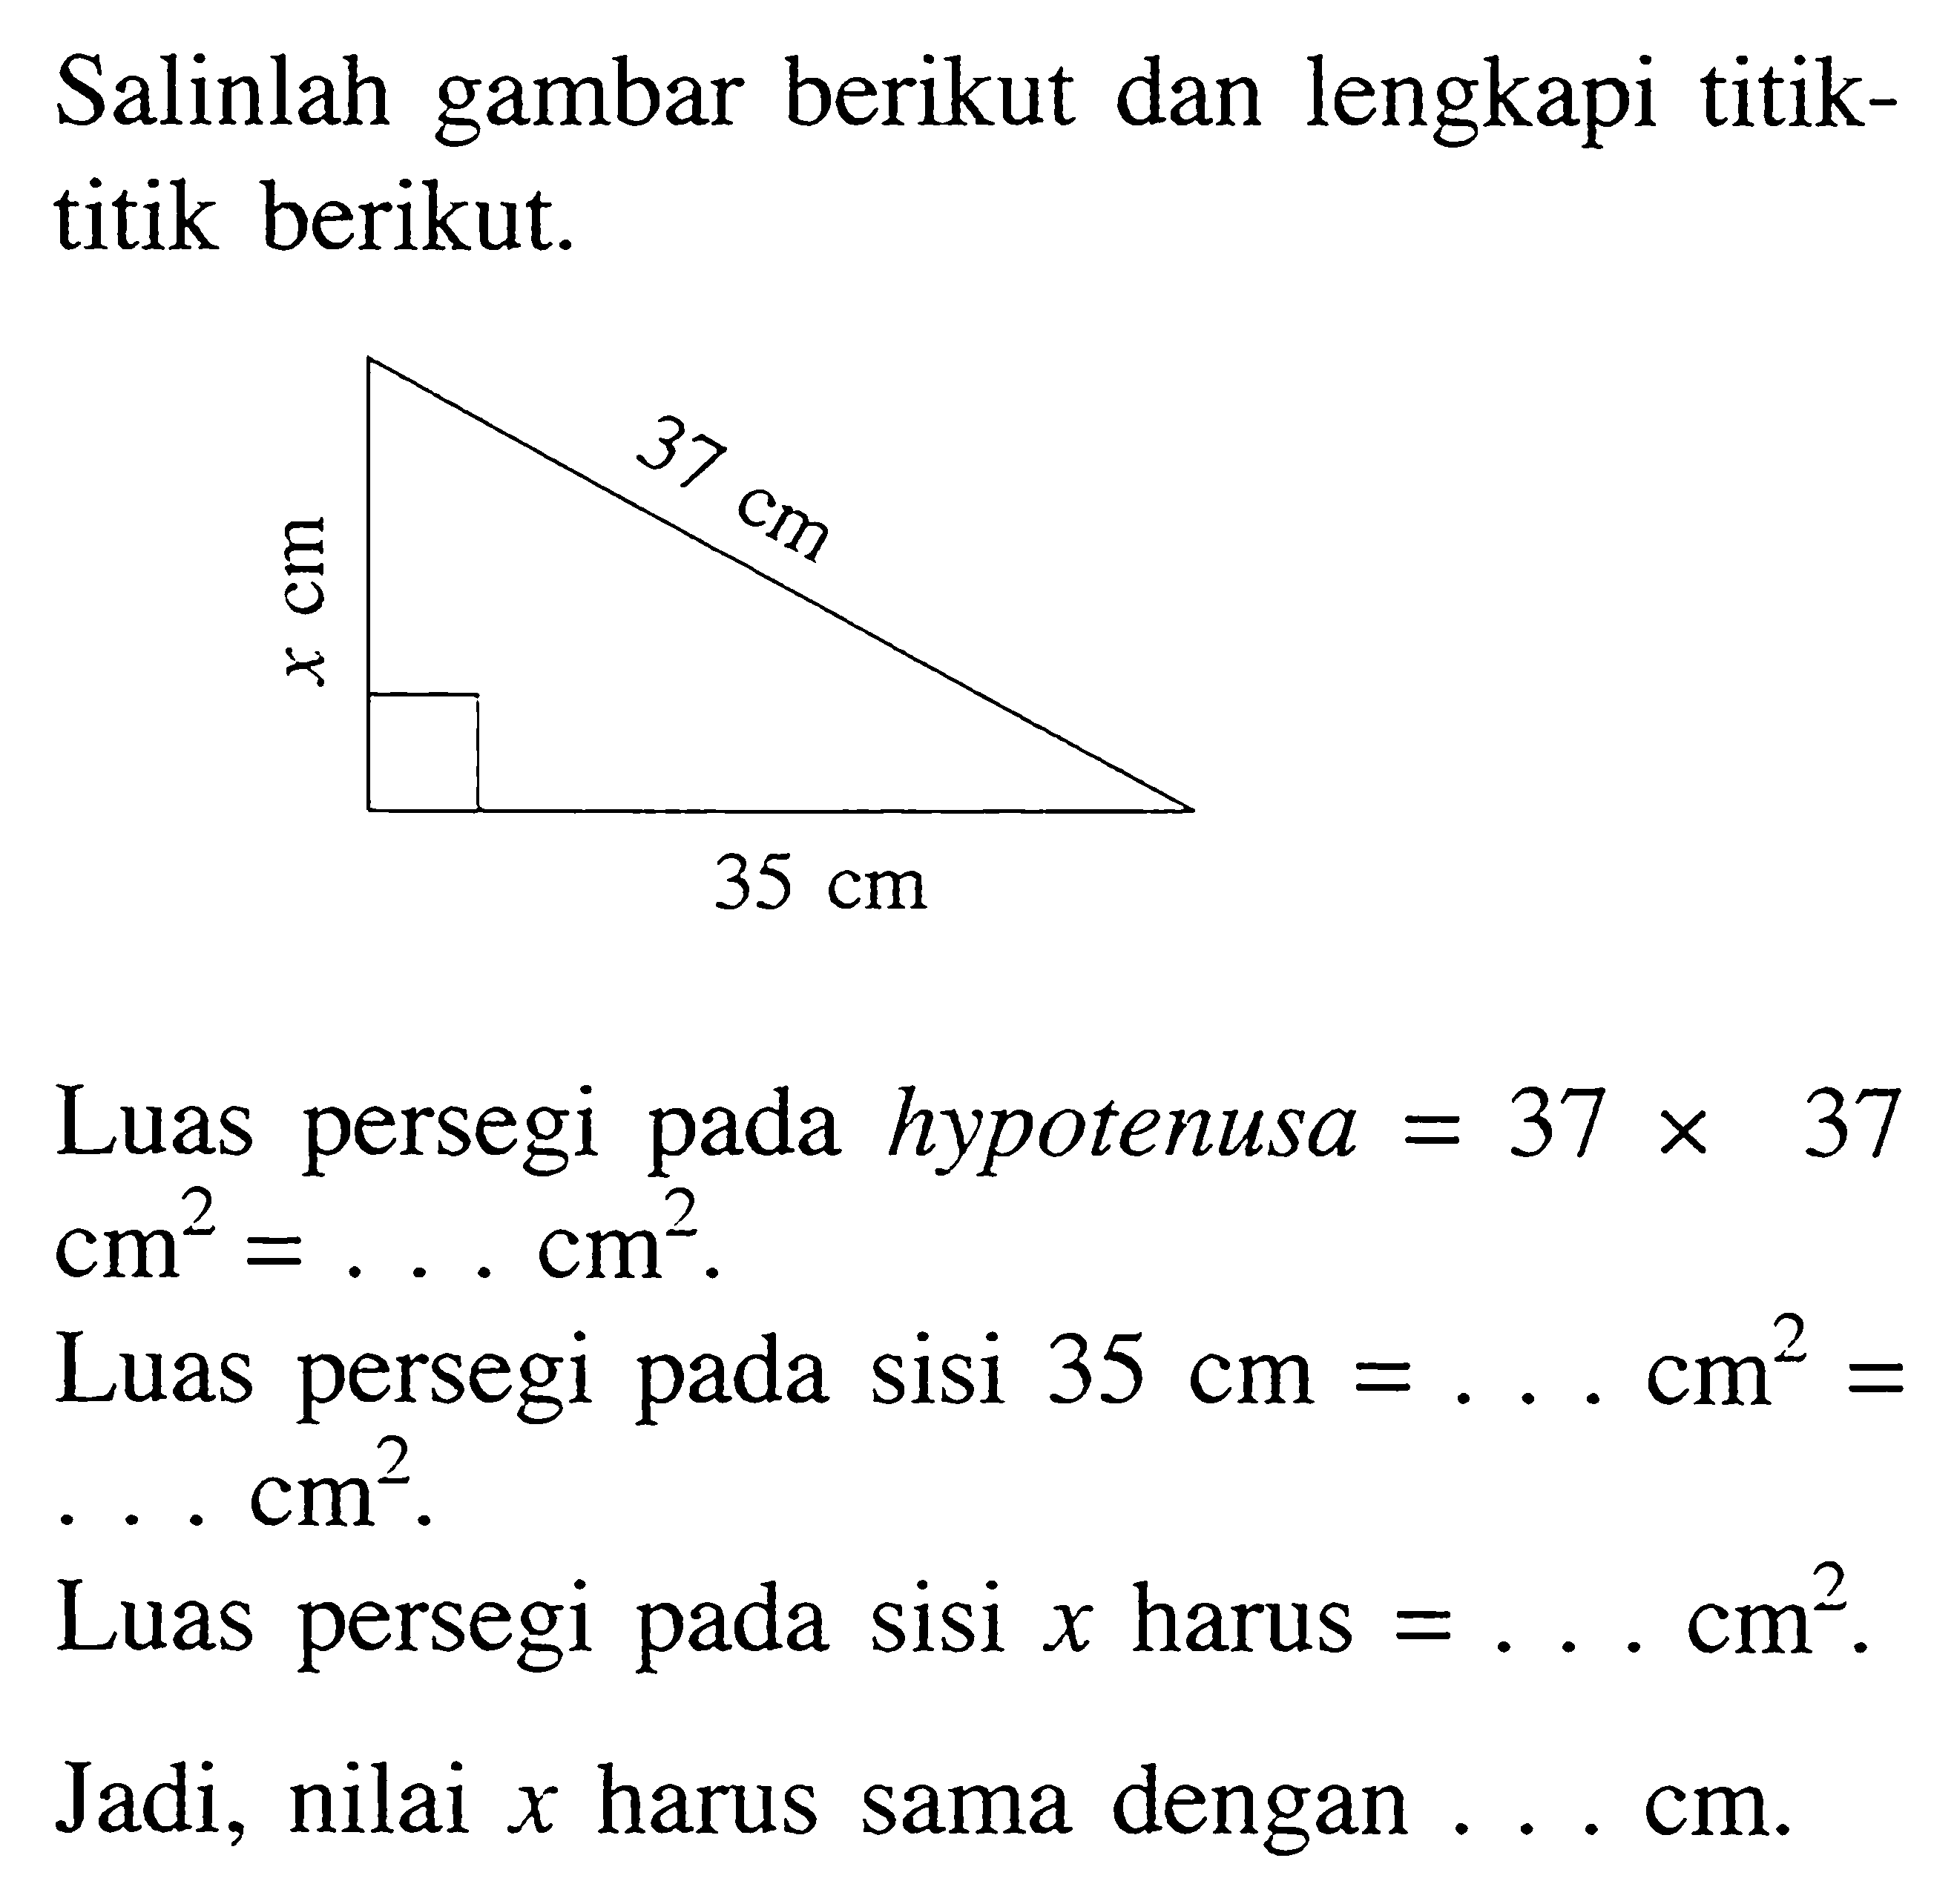 Salinlah gambar berikut dan lengkapi titiktitik berikut.

Luas persegi pada hypotenusa  =37 x 37 cm^2=... cm^2.
Luas persegi pada sisi 35 cm=... cm^2=   ... cm^2.
Luas persegi pada sisi x harus  =... cm^2.
Jadi, nilai  x  harus sama dengan ... cm.